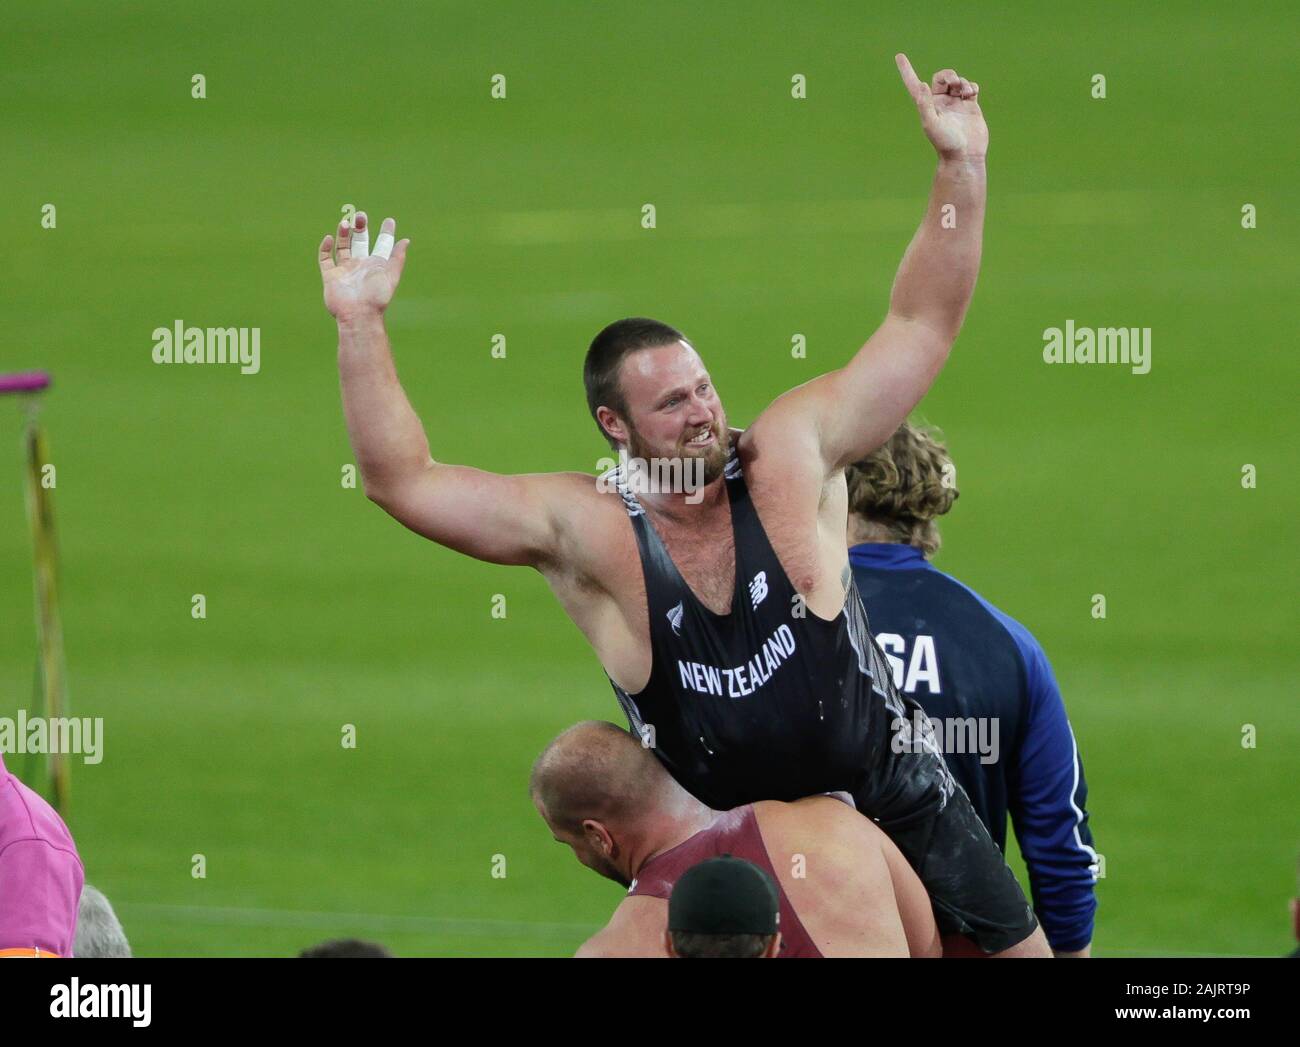 Tomas Walsh (Nouvelle Zélande) au cours de la tour de la finale hommes es Championnats du monde d'athlétisme le 6 août 201e au Stade olympique à Londres, Grande-Bretagne Banque D'Images